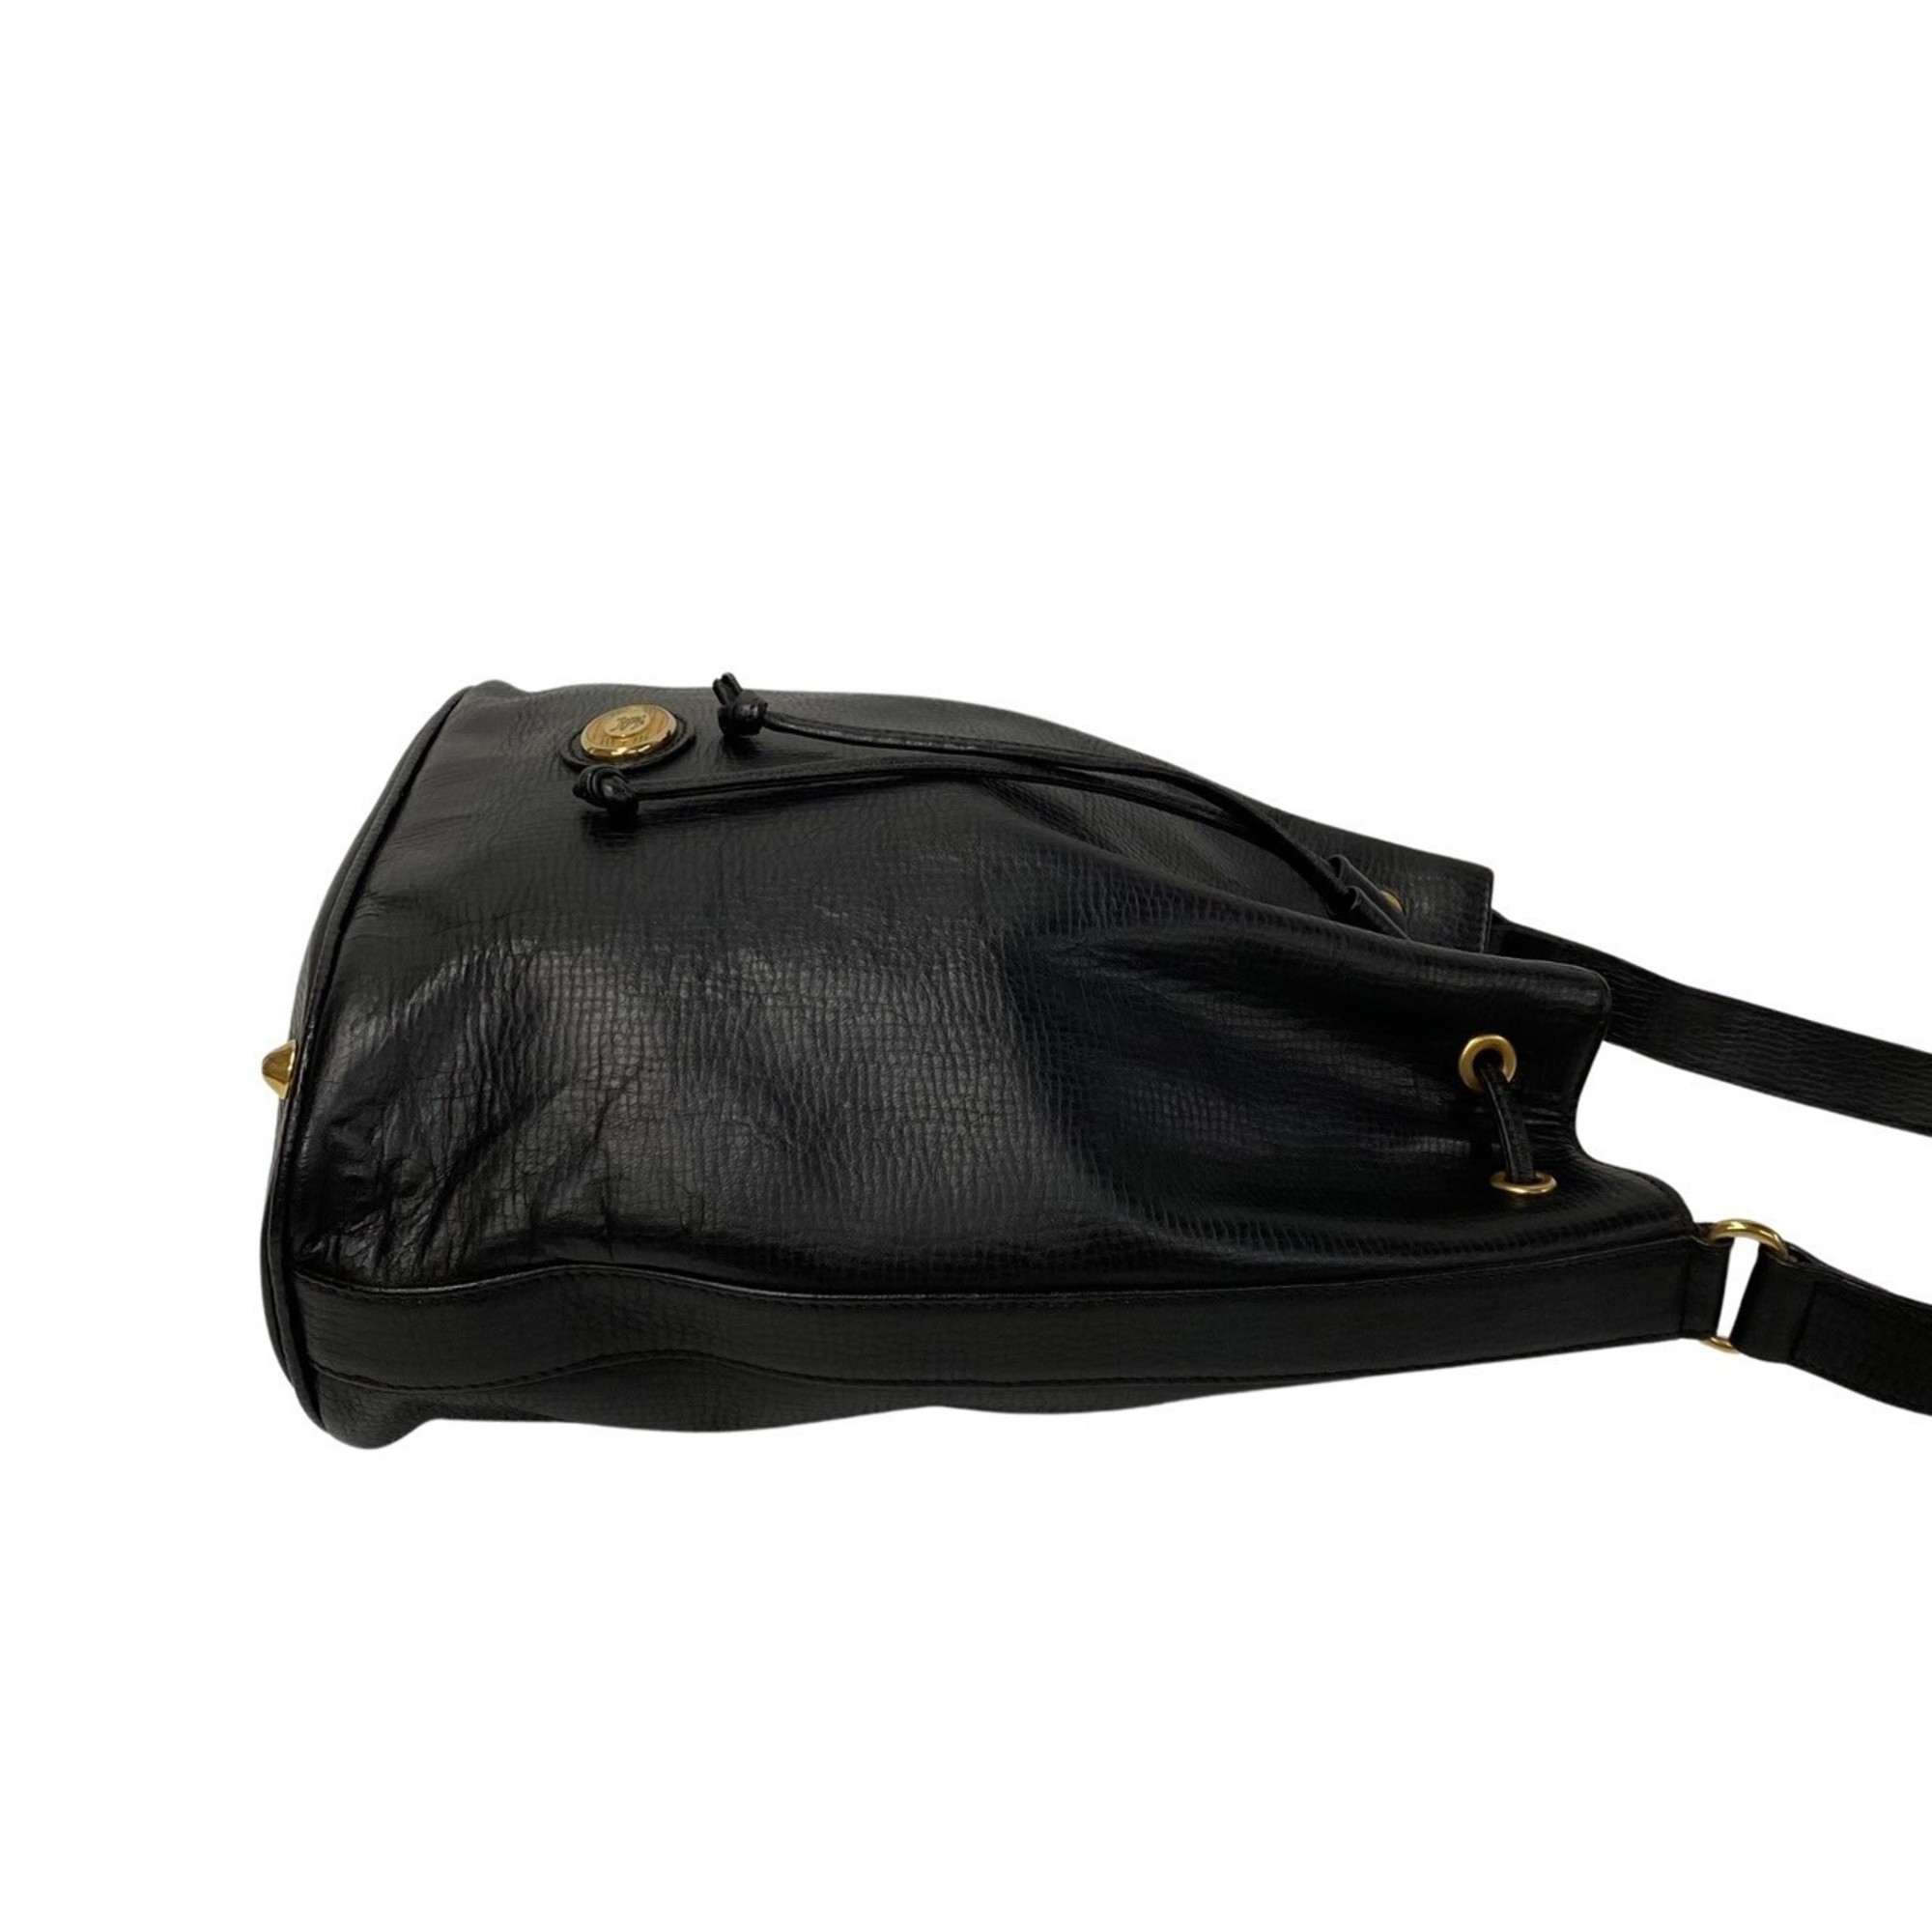 Burberrys Nova Check Hardware Leather Shoulder Bag Sacoche Black 21185